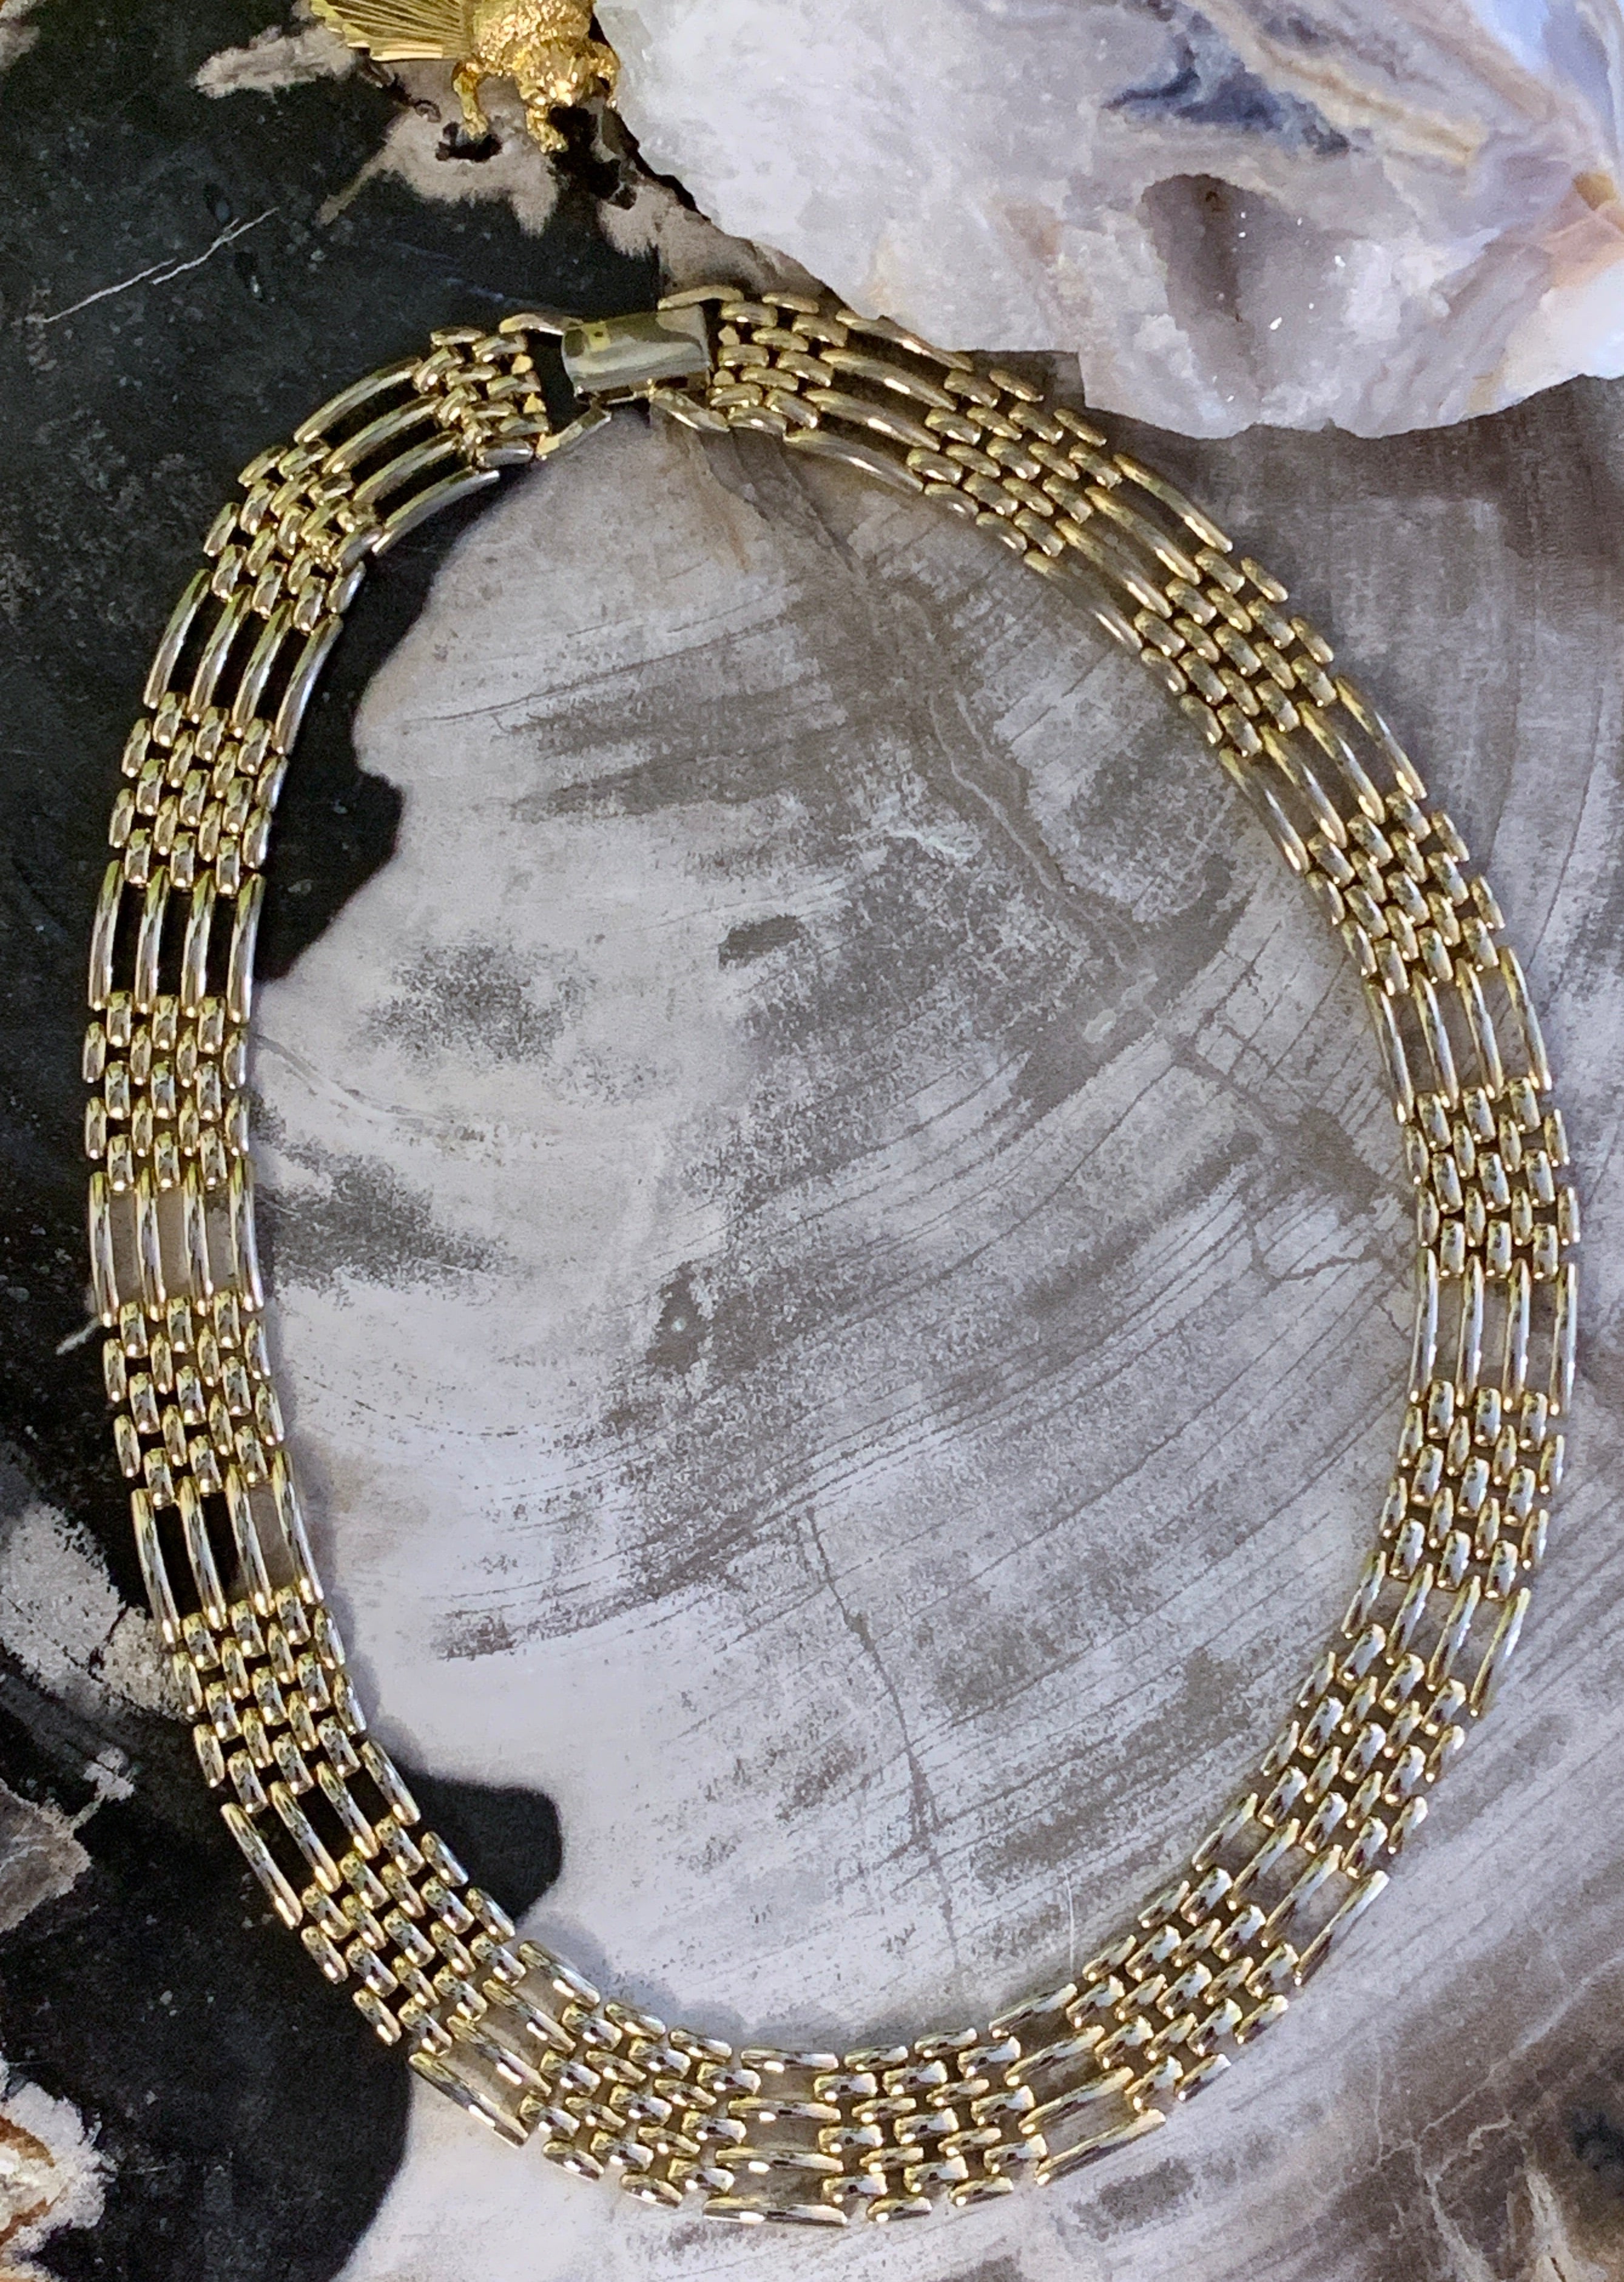 Vintage Napier Silver Tone Metal Bead Necklace